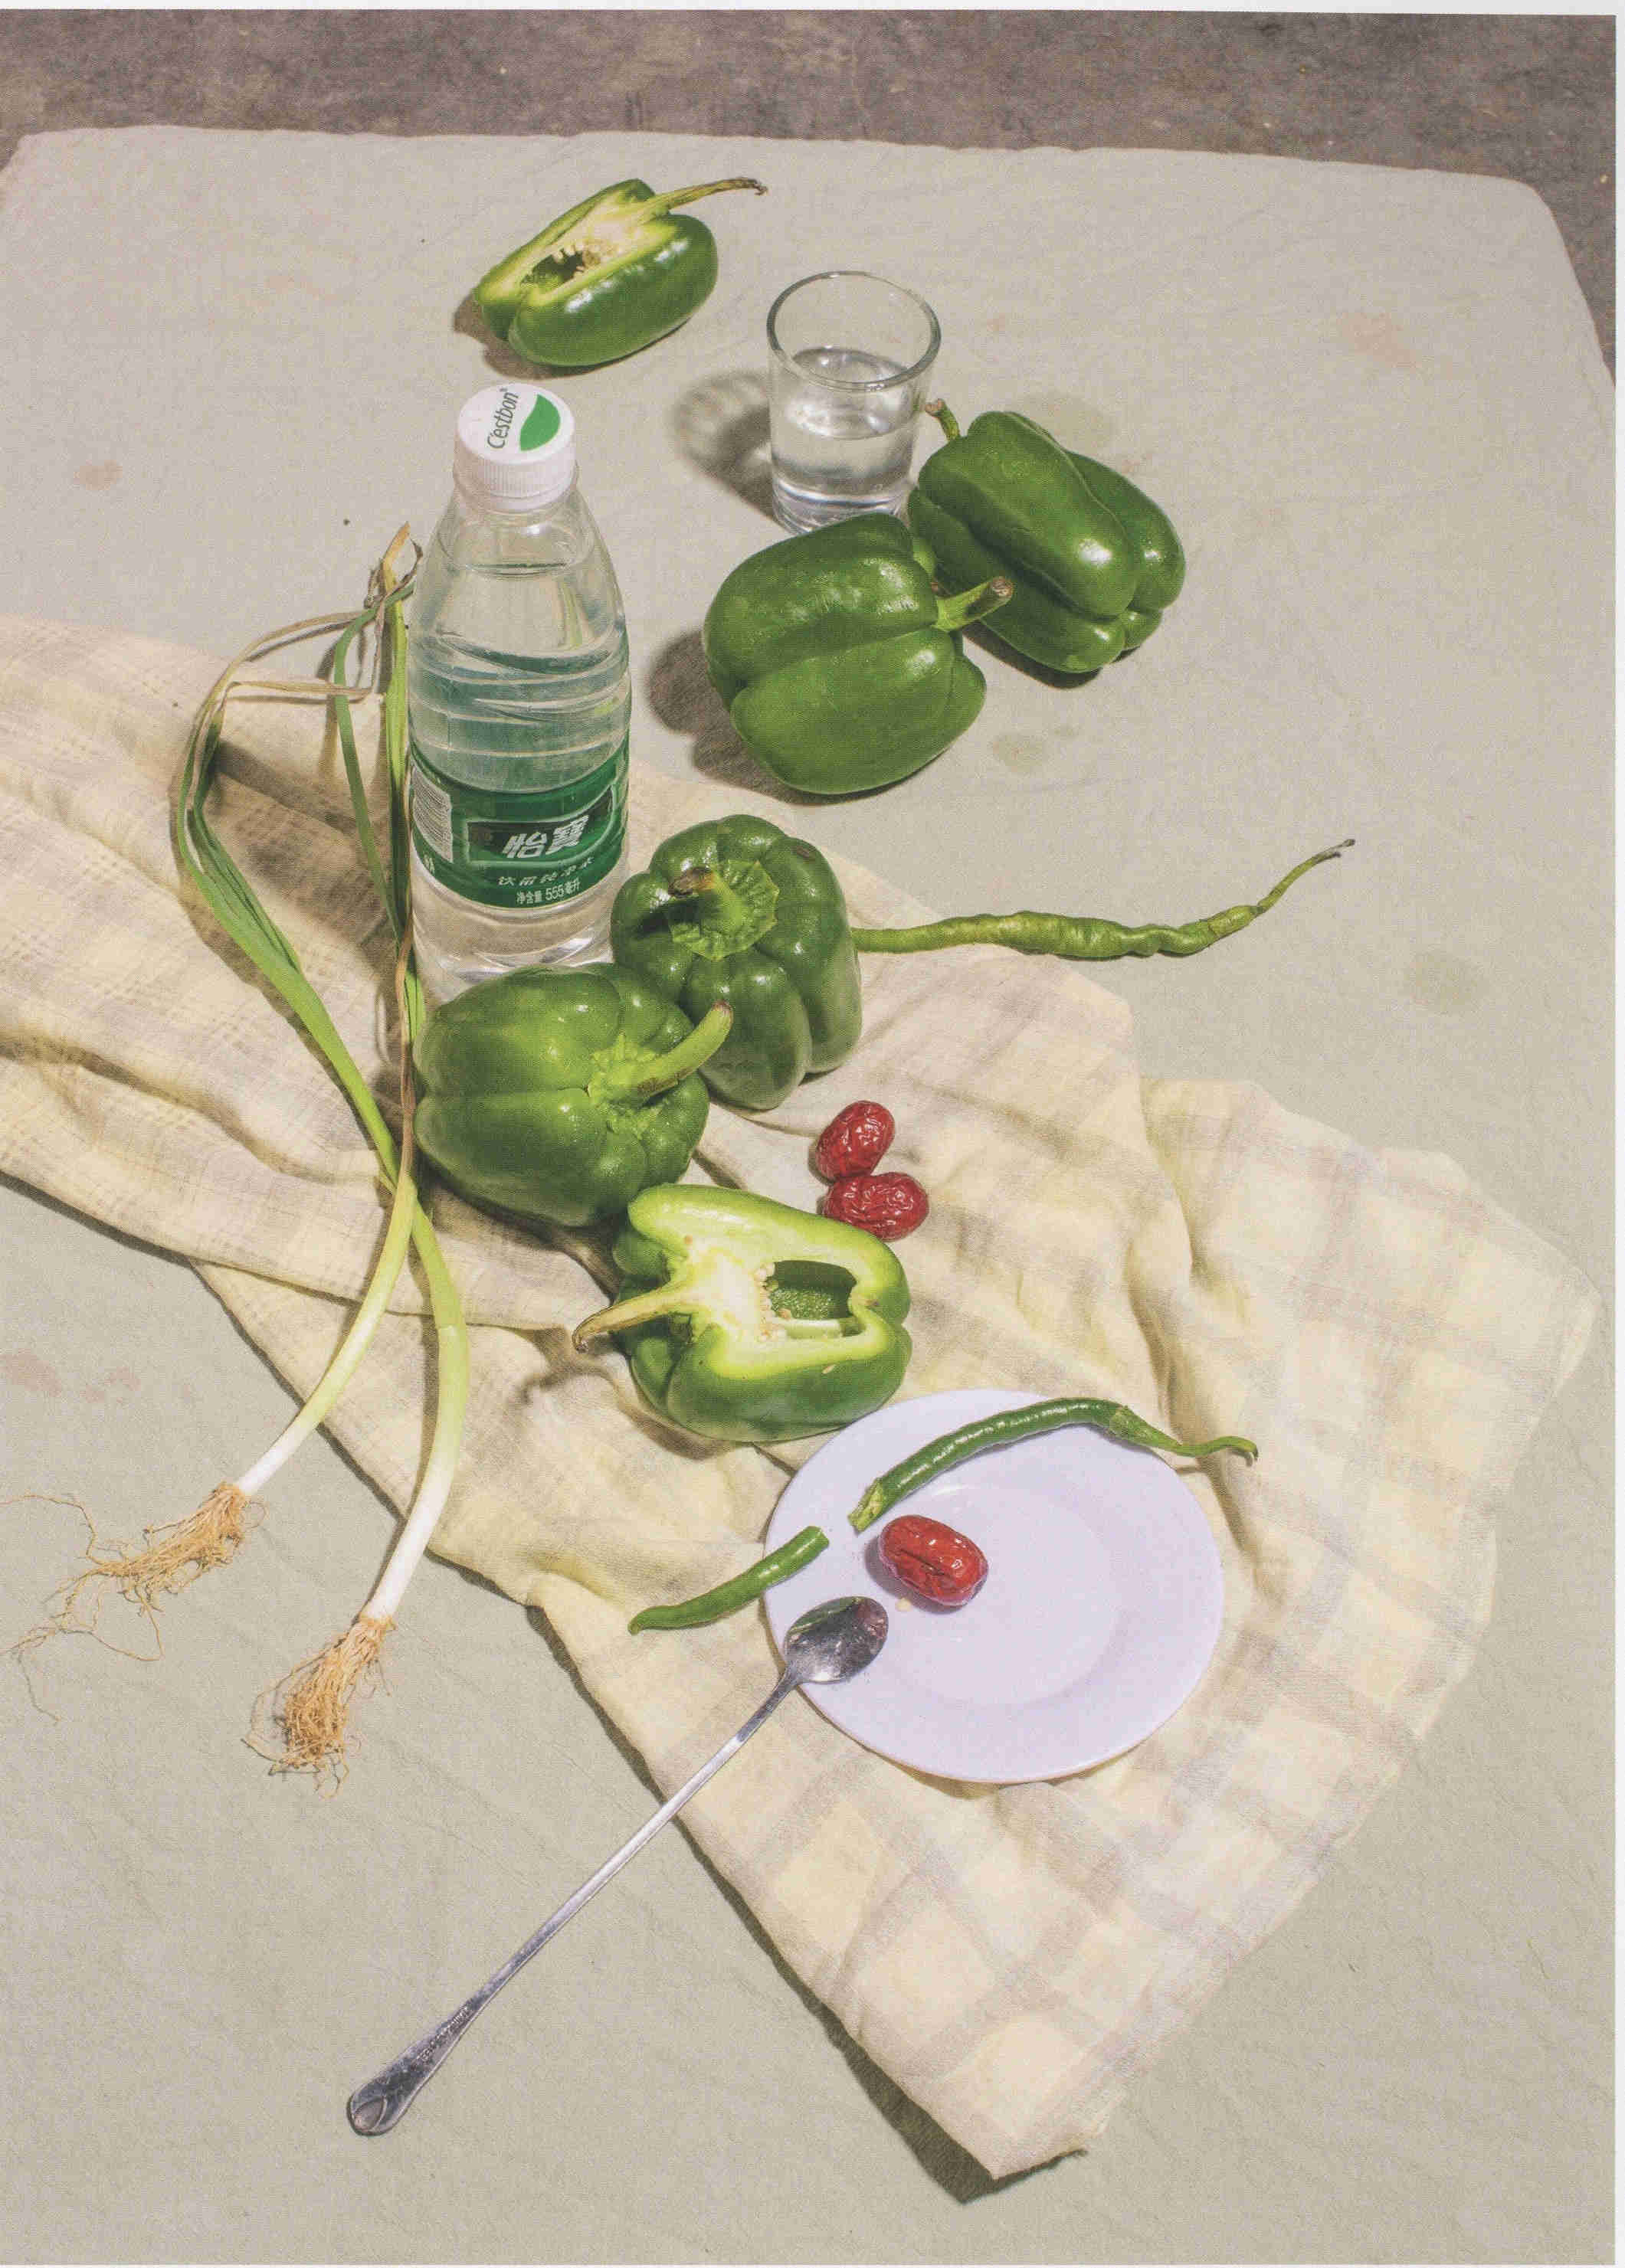 素静物照片素材 矿泉水瓶子和青椒